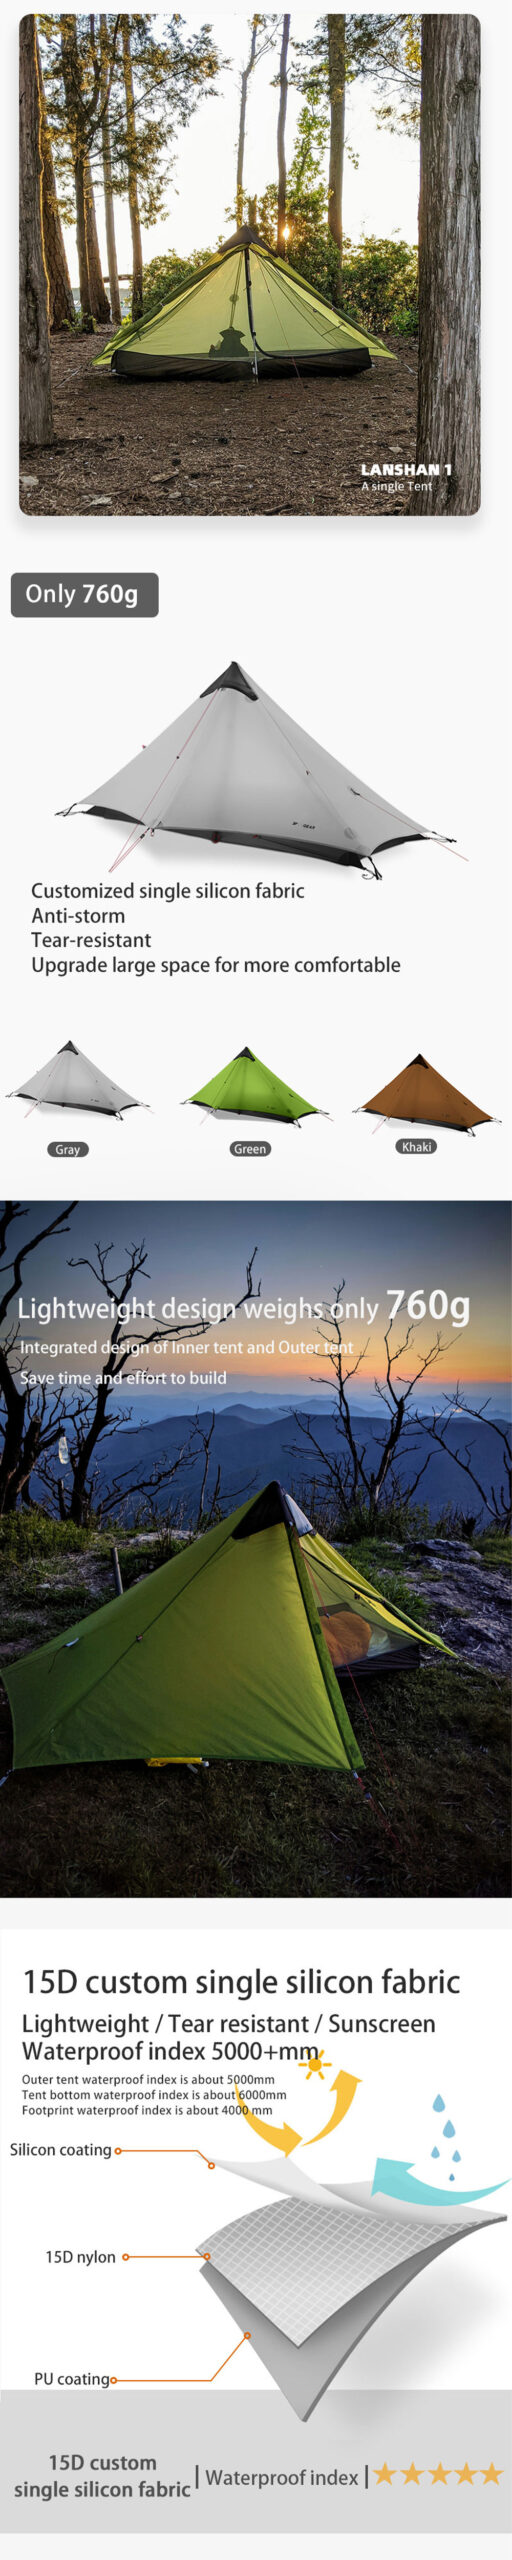 3F-UL-GEAR Lanshan-1 Ultralight Tent Camping 3/4 Season